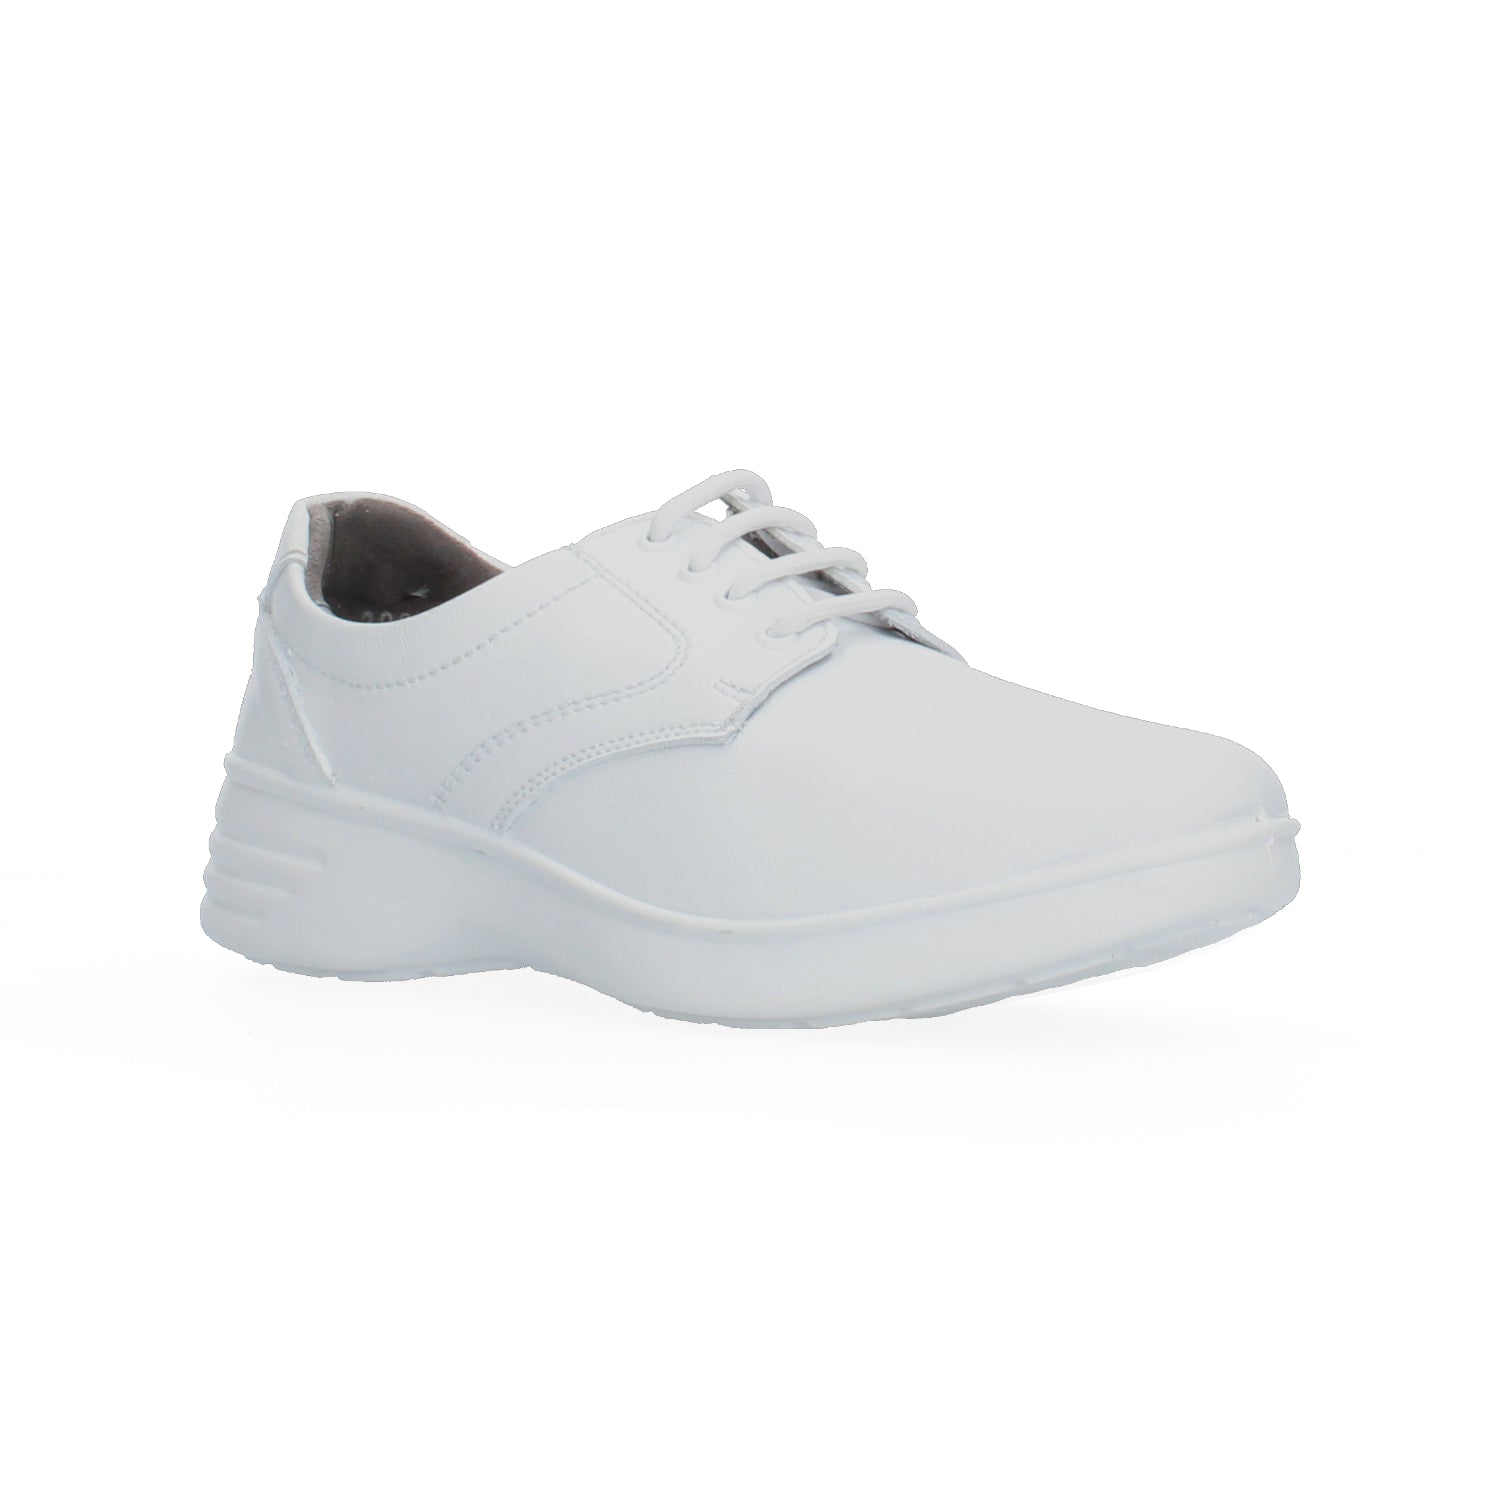 Zapato de Servicio Clínico Larespi Blanco para Mujer [LAR5]